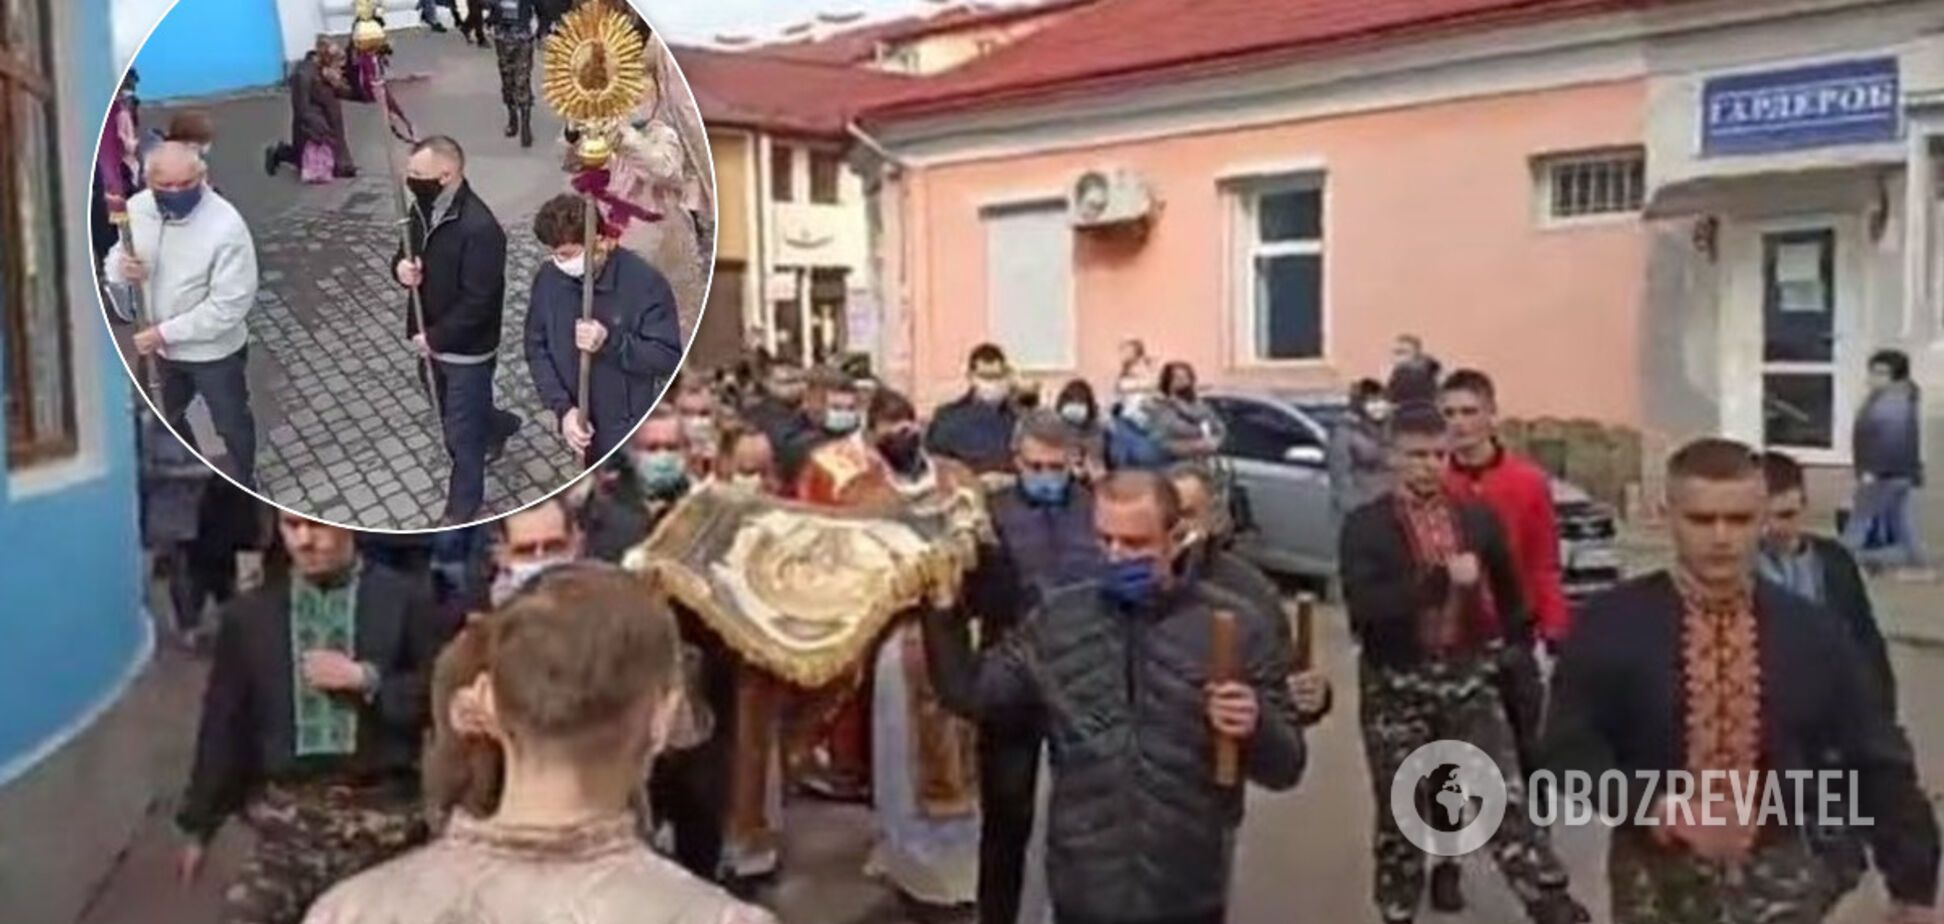 На Львовщине церковники в разгар карантина устроили массовое шествие. Возмутительные фото